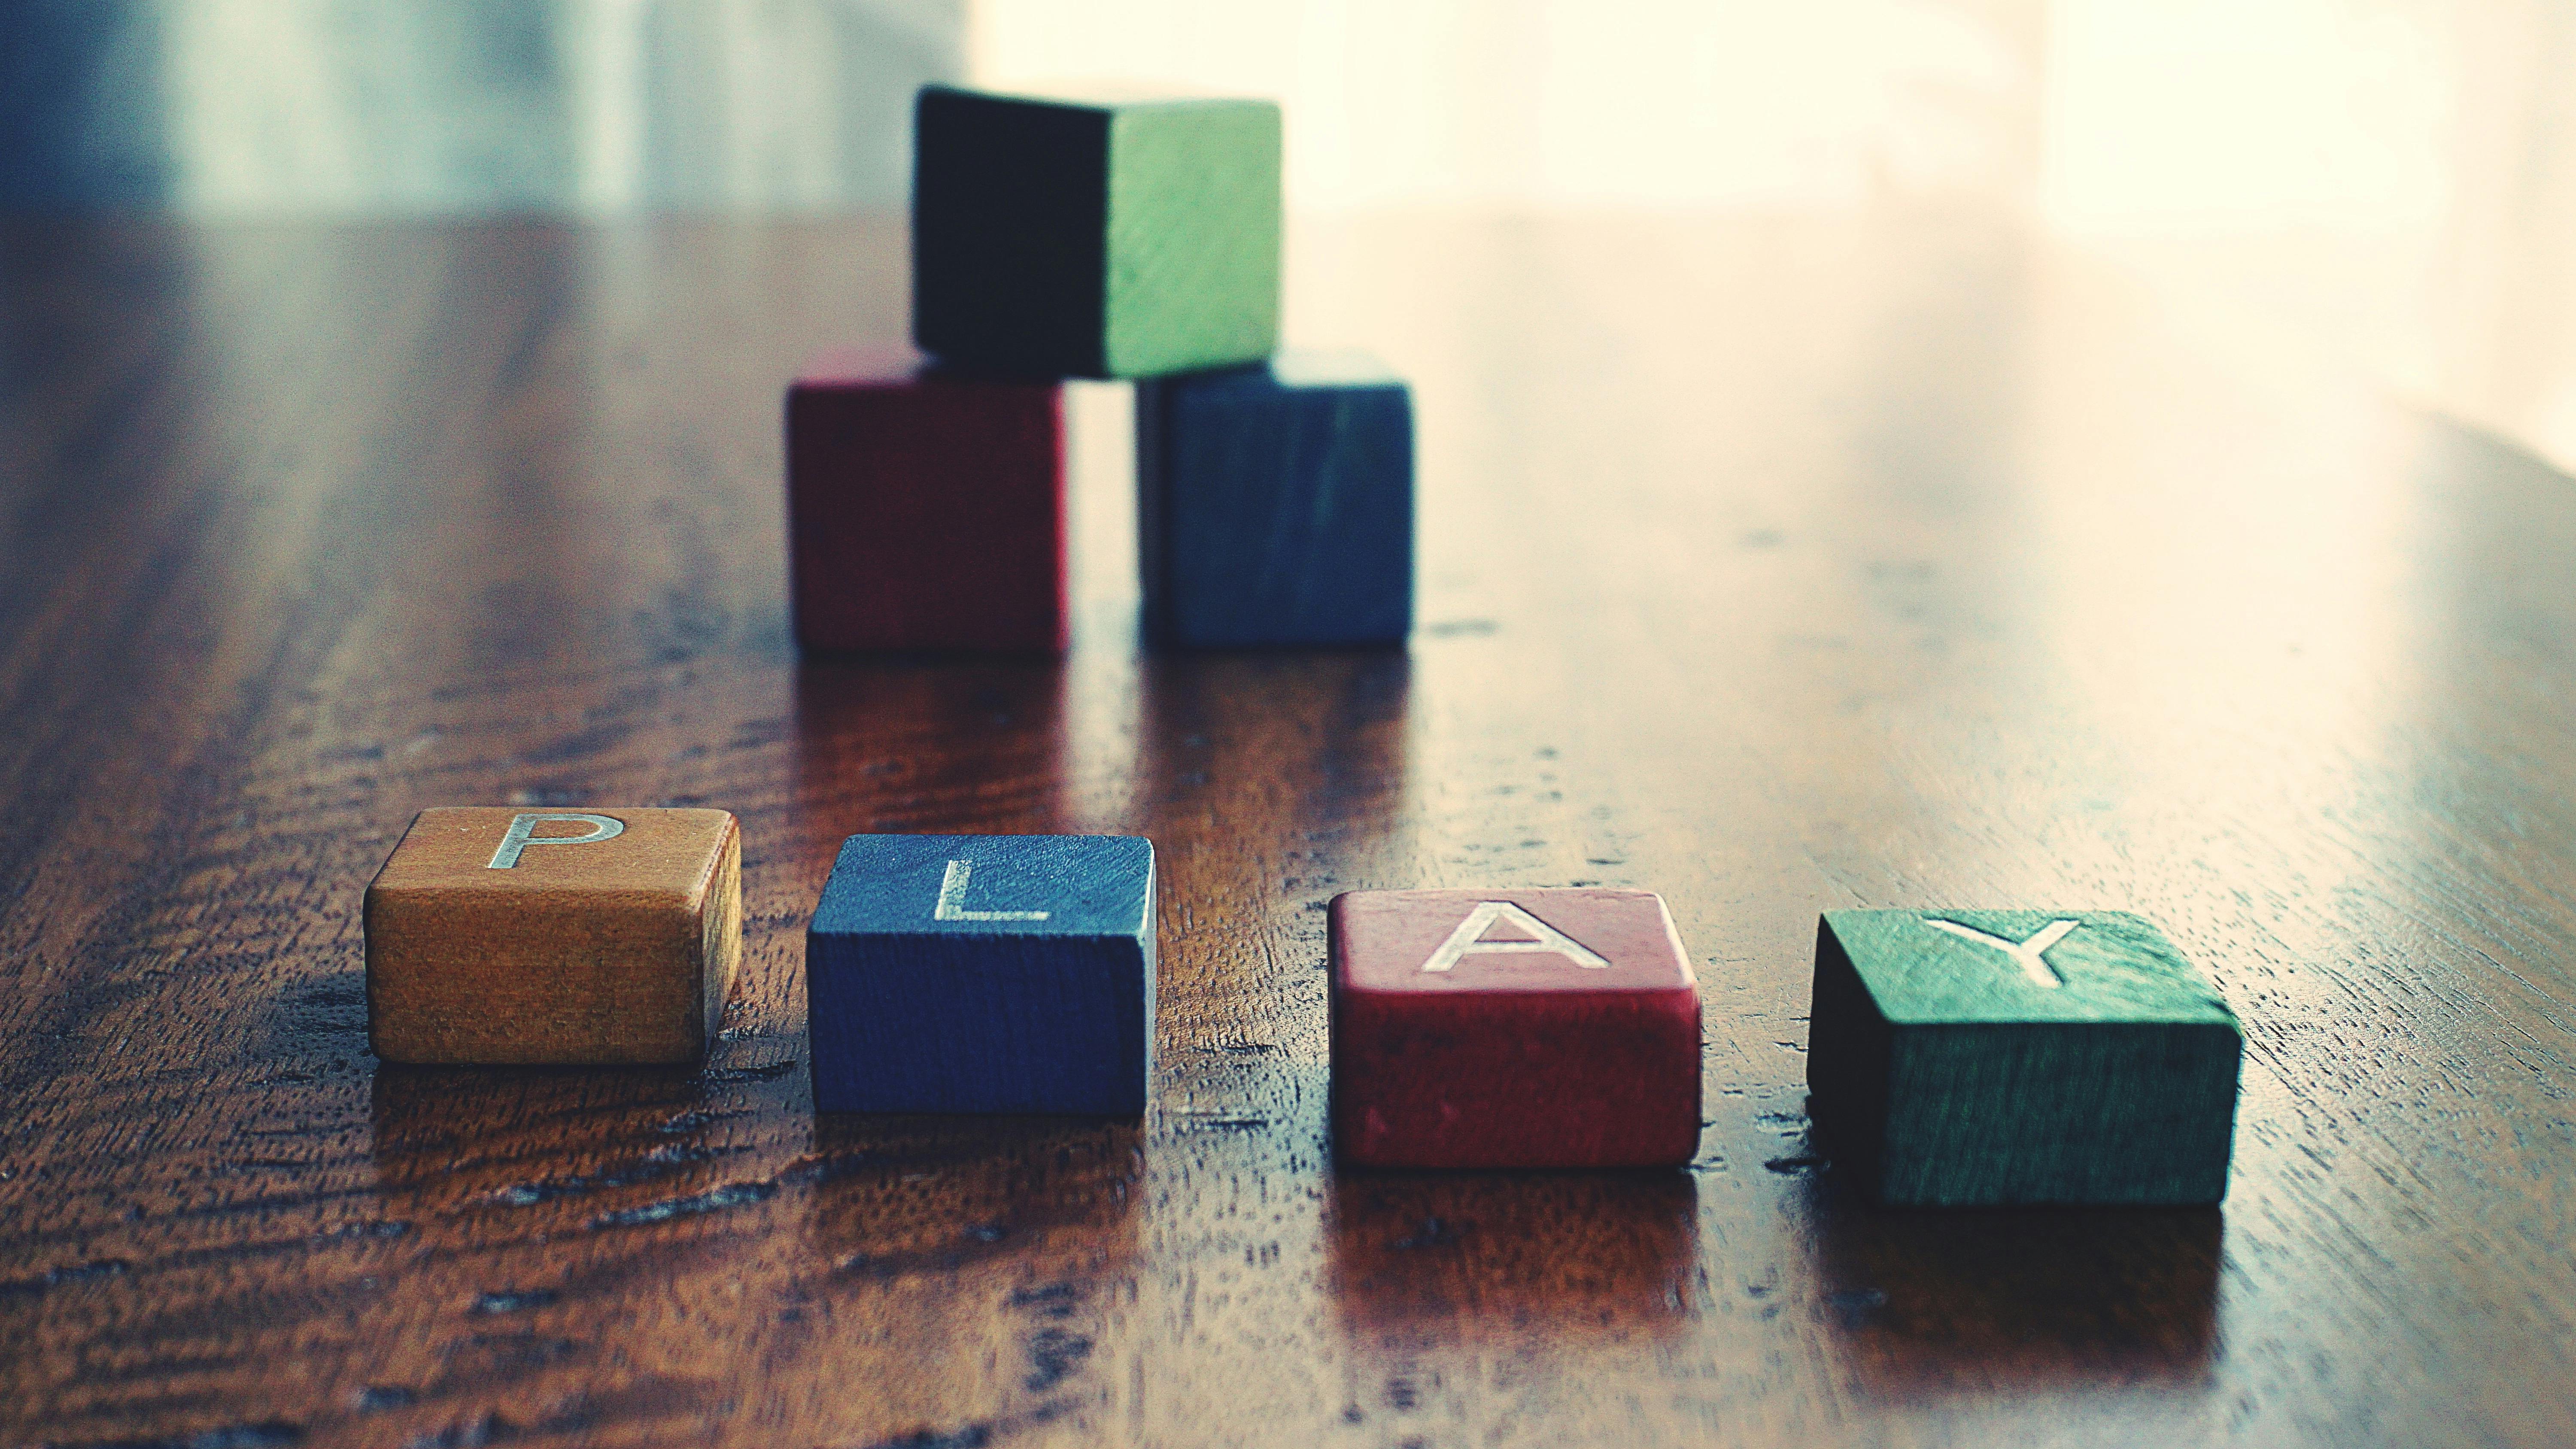  faits sur minecraft - Photo conceptuelle du mot "jouer" Orthographié par des blocs de bois.